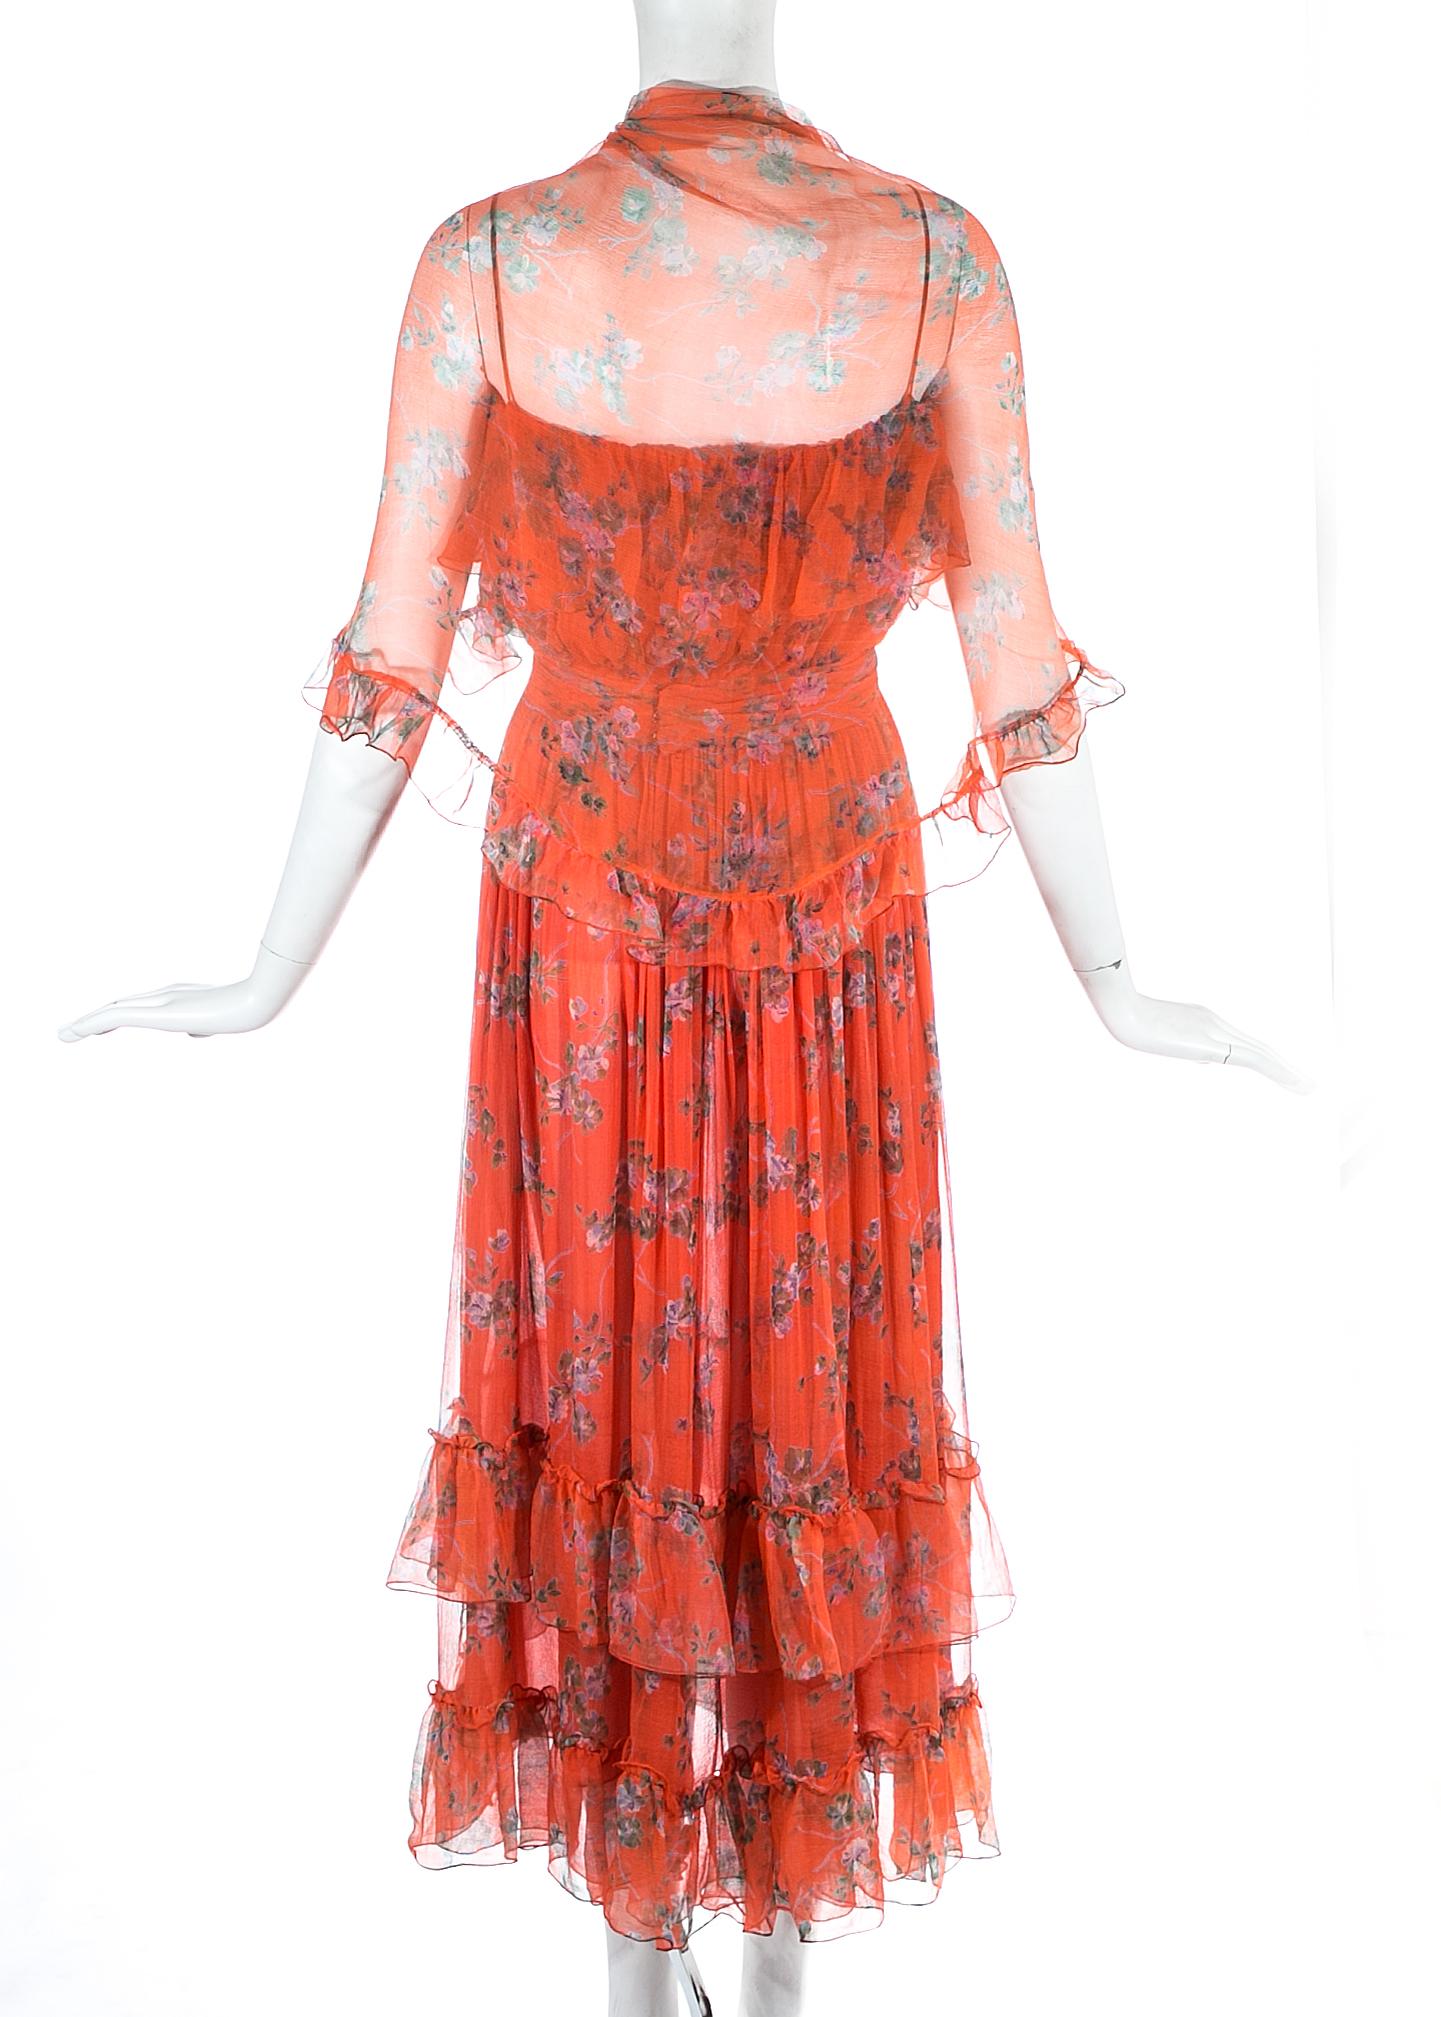 Orange Bellville Sassoon orange floral silk chiffon summer dress with scarf, c. 1970s